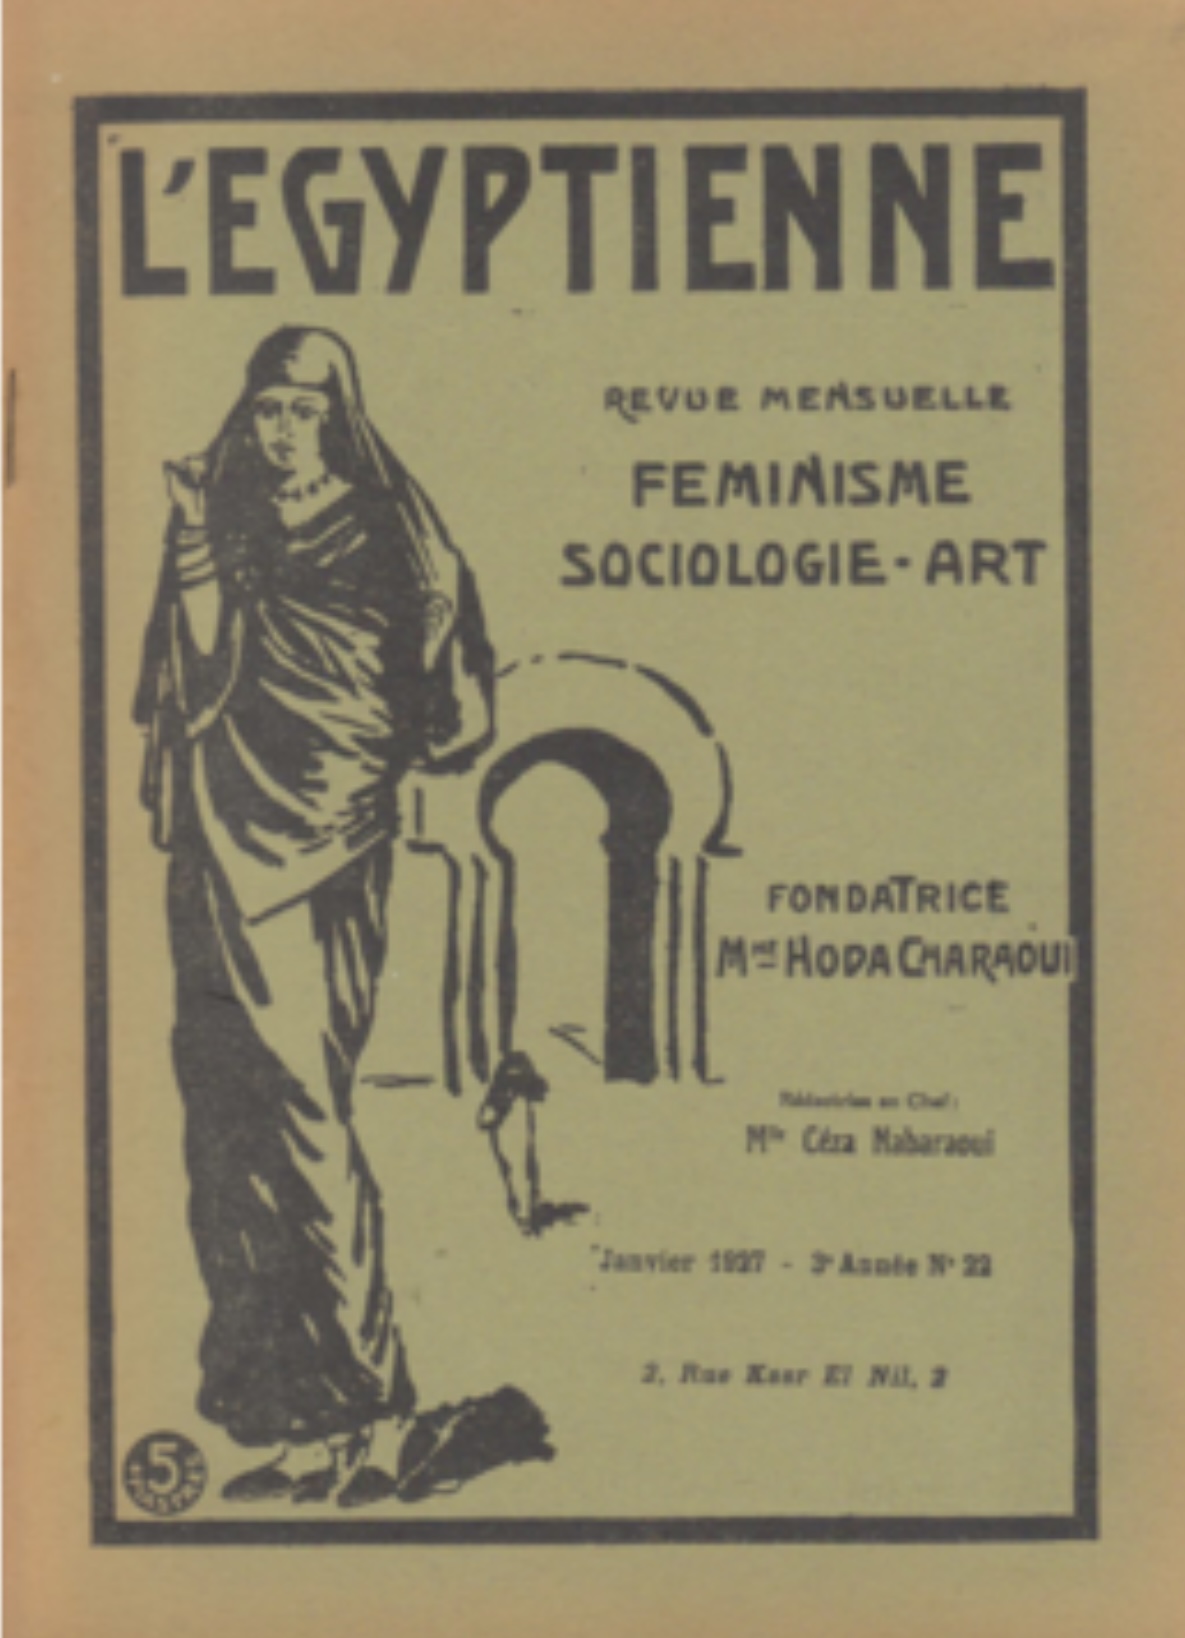 Le magazine féministe L’Égyptienne fondé par Huda Sharawi en 1925 (Wikipédia)